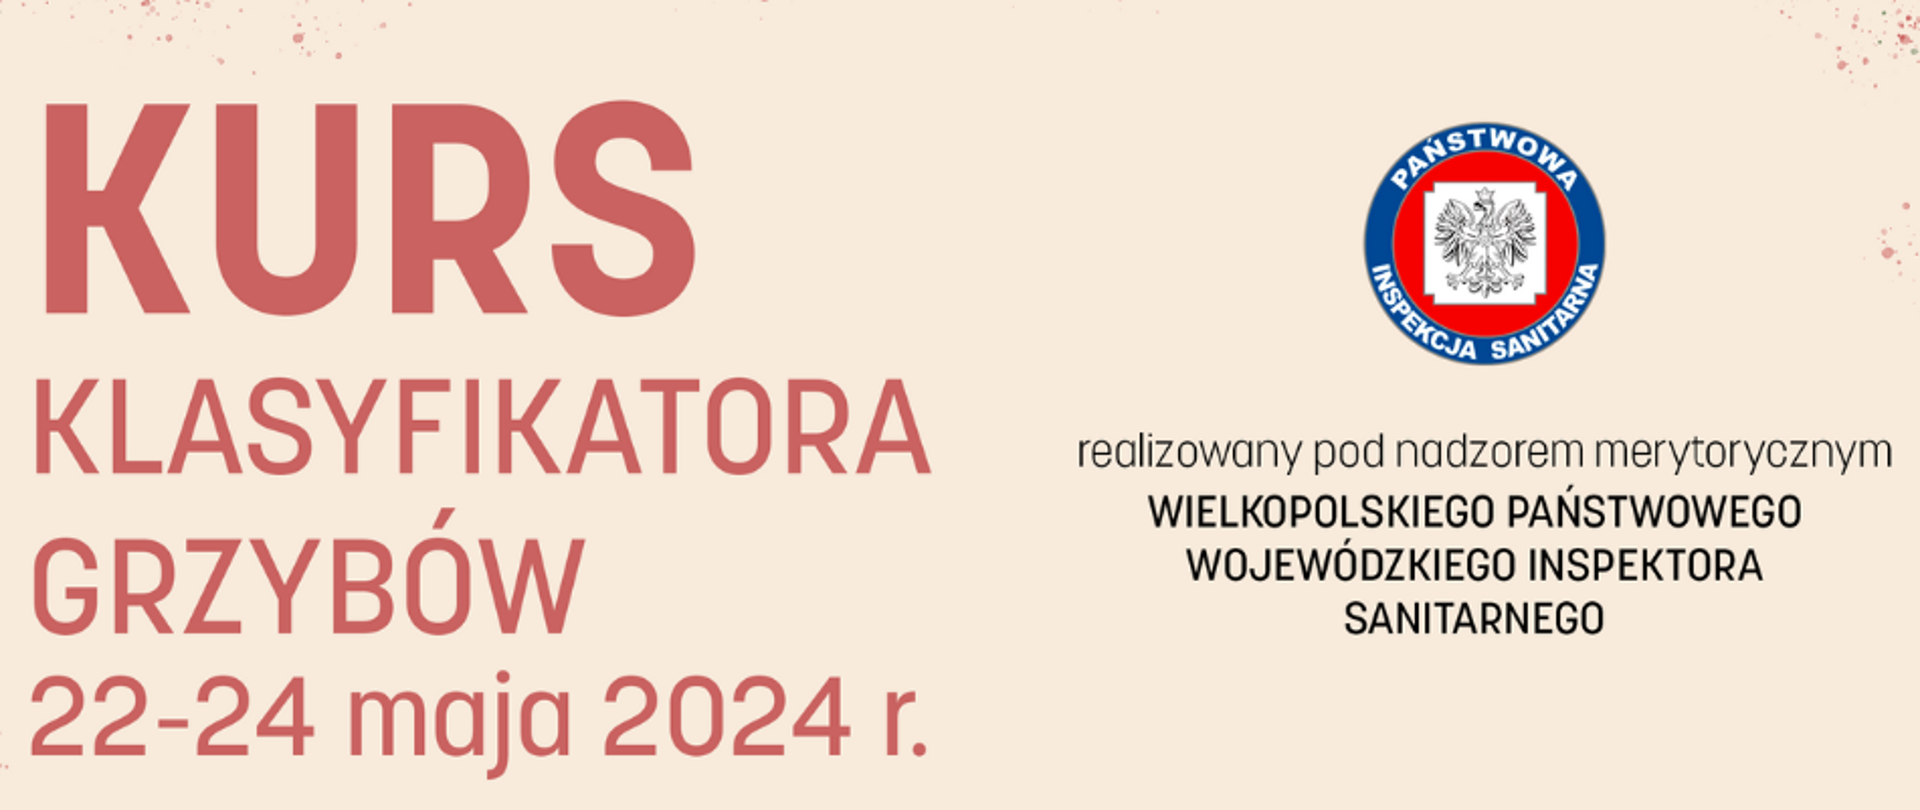 Grafika przedstawia beżowe tło z tytułem po lewej stronie "Kurs klasyfikatora grzybów 22-24 maja 2024 r." z prawej strony logo Państwowej Inspekcji Sanitarnej oraz napis "realizowany pod nadzorem merytorycznym Wielkopolskiego Państwowego Wojewódzkiego Inspektora Sanitarnego"